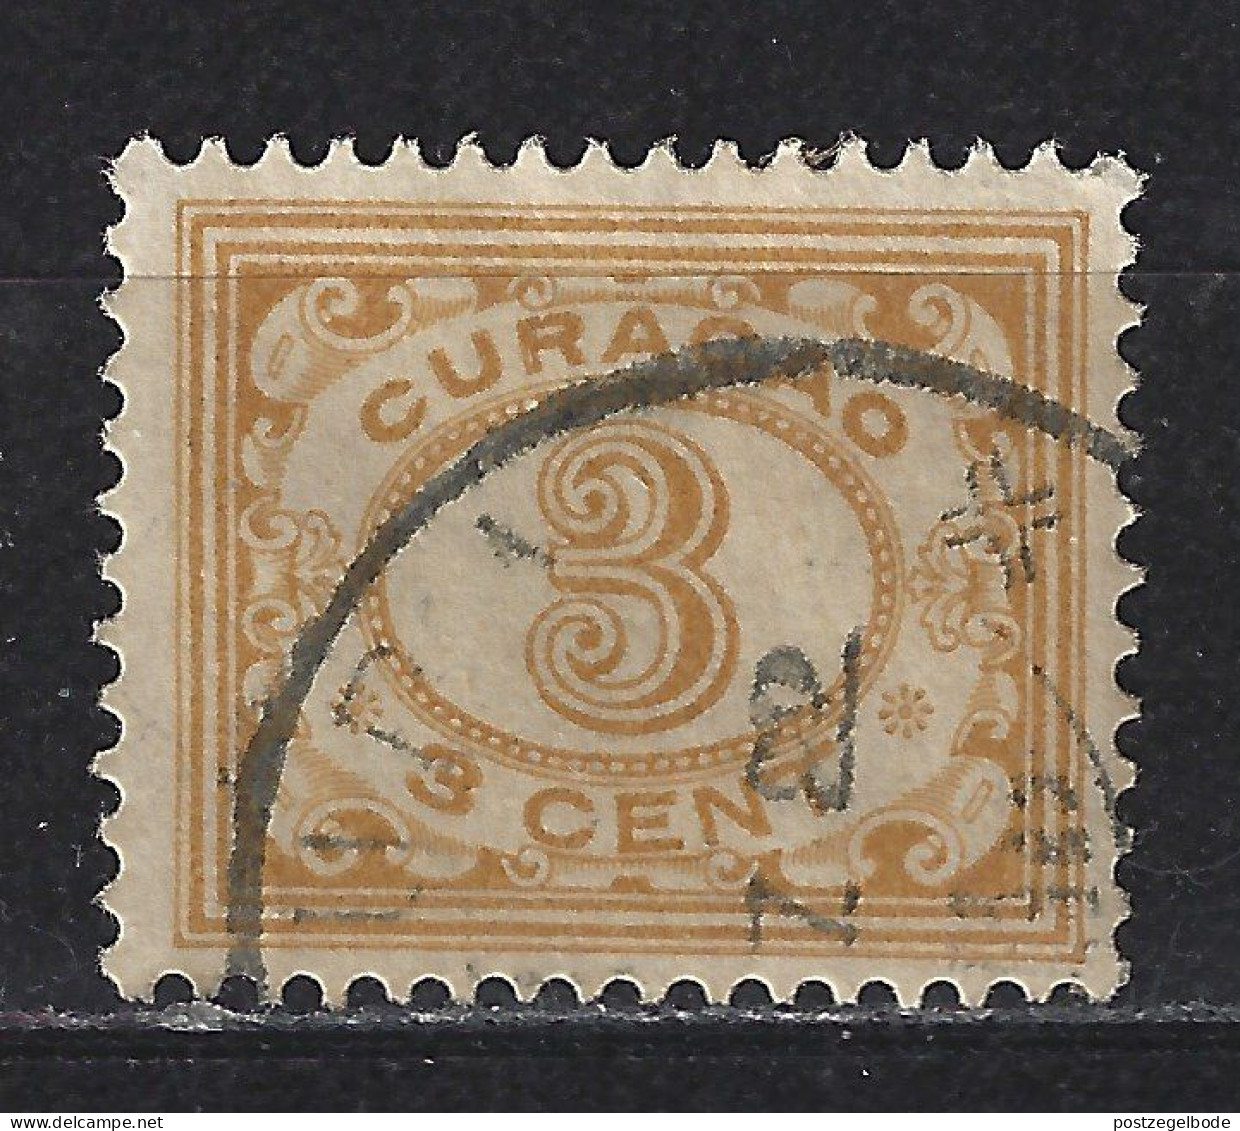 Nederlandse Antillen Curacao 49 Used ; Cijfer Cipher Cifra Cifre 1915 ; LOOK NOW FOR VERY FINE MLH COLLECTION CURACAO - Curaçao, Nederlandse Antillen, Aruba